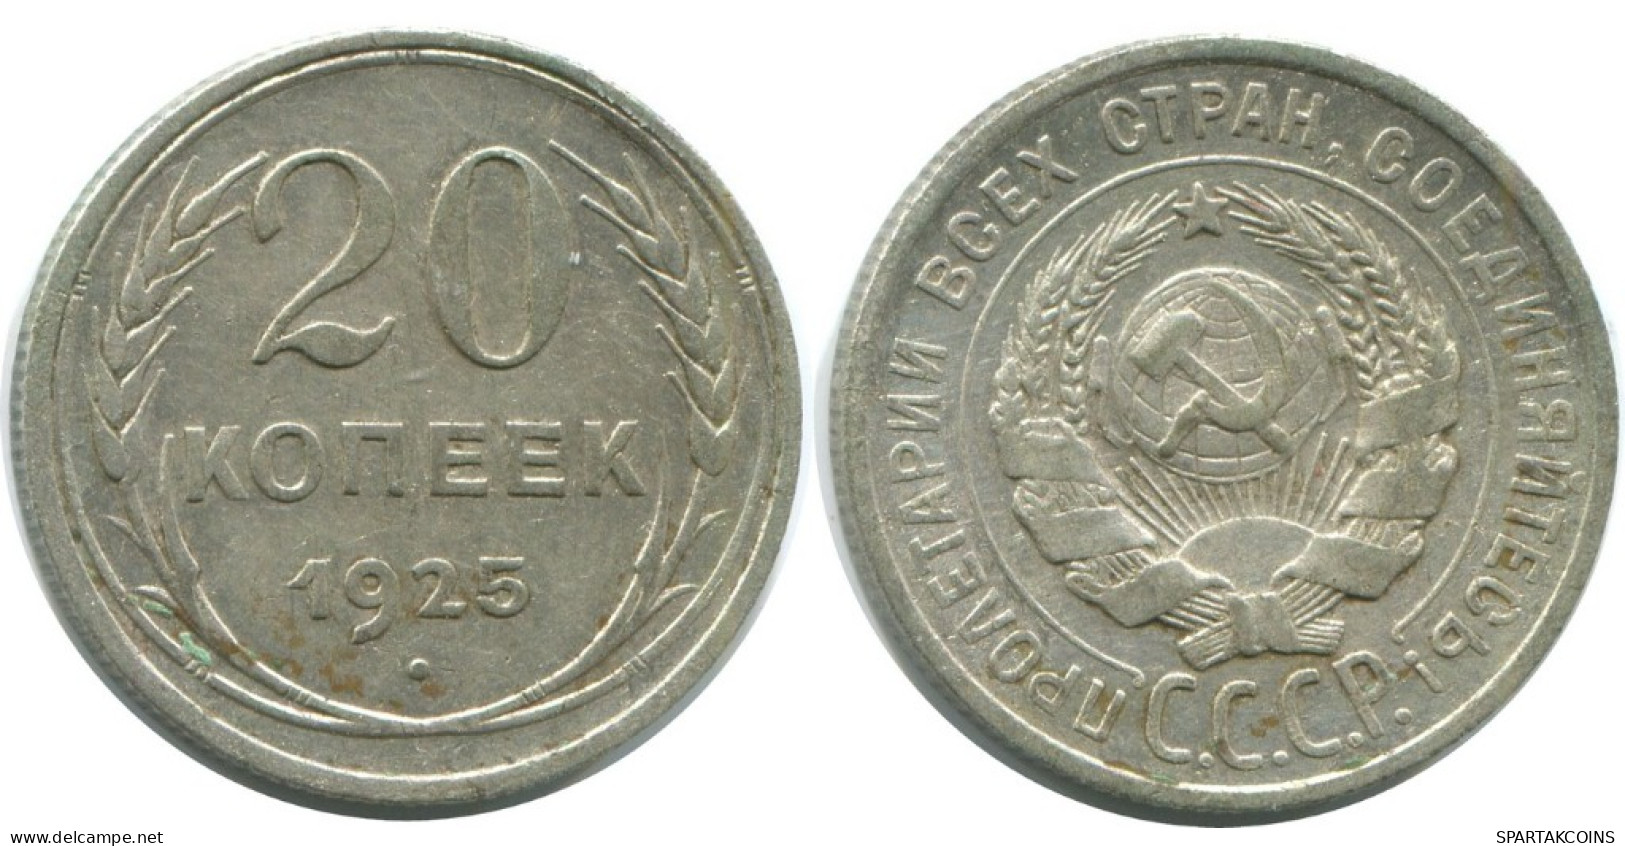 20 KOPEKS 1925 RUSSLAND RUSSIA USSR SILBER Münze HIGH GRADE #AF321.4.D.A - Russia